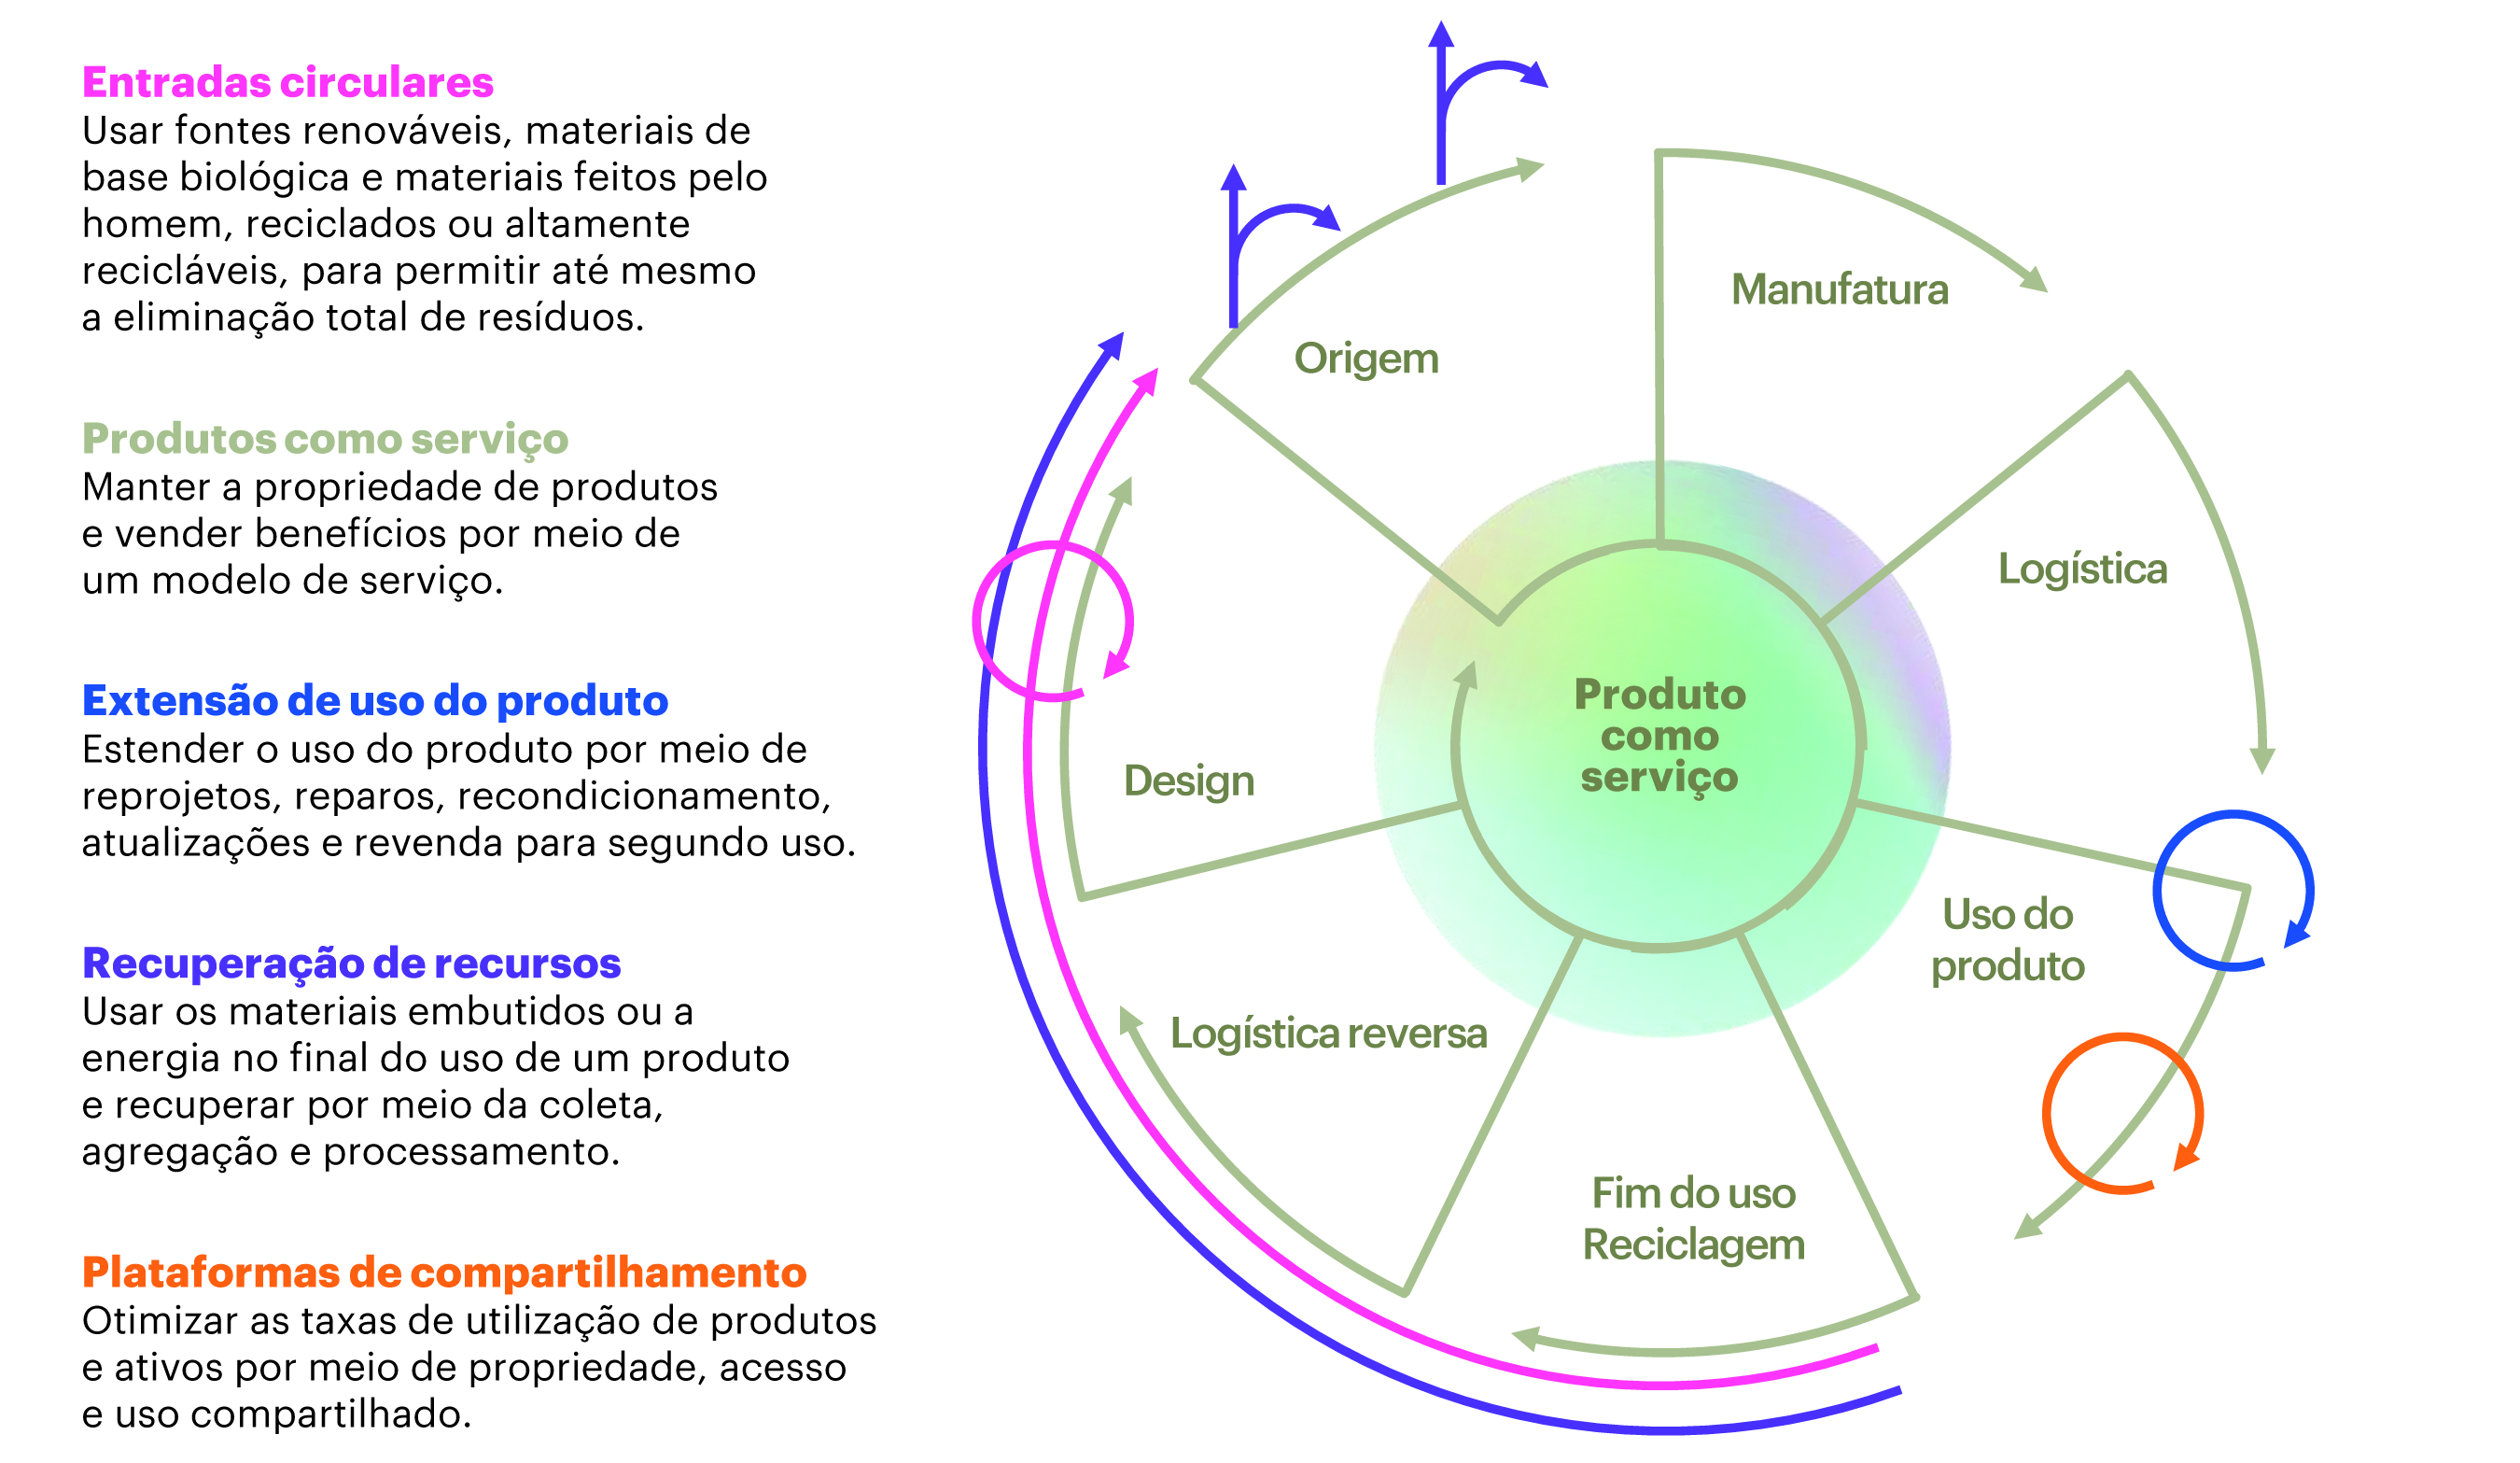 gráfico accenture modelo de negócio circular